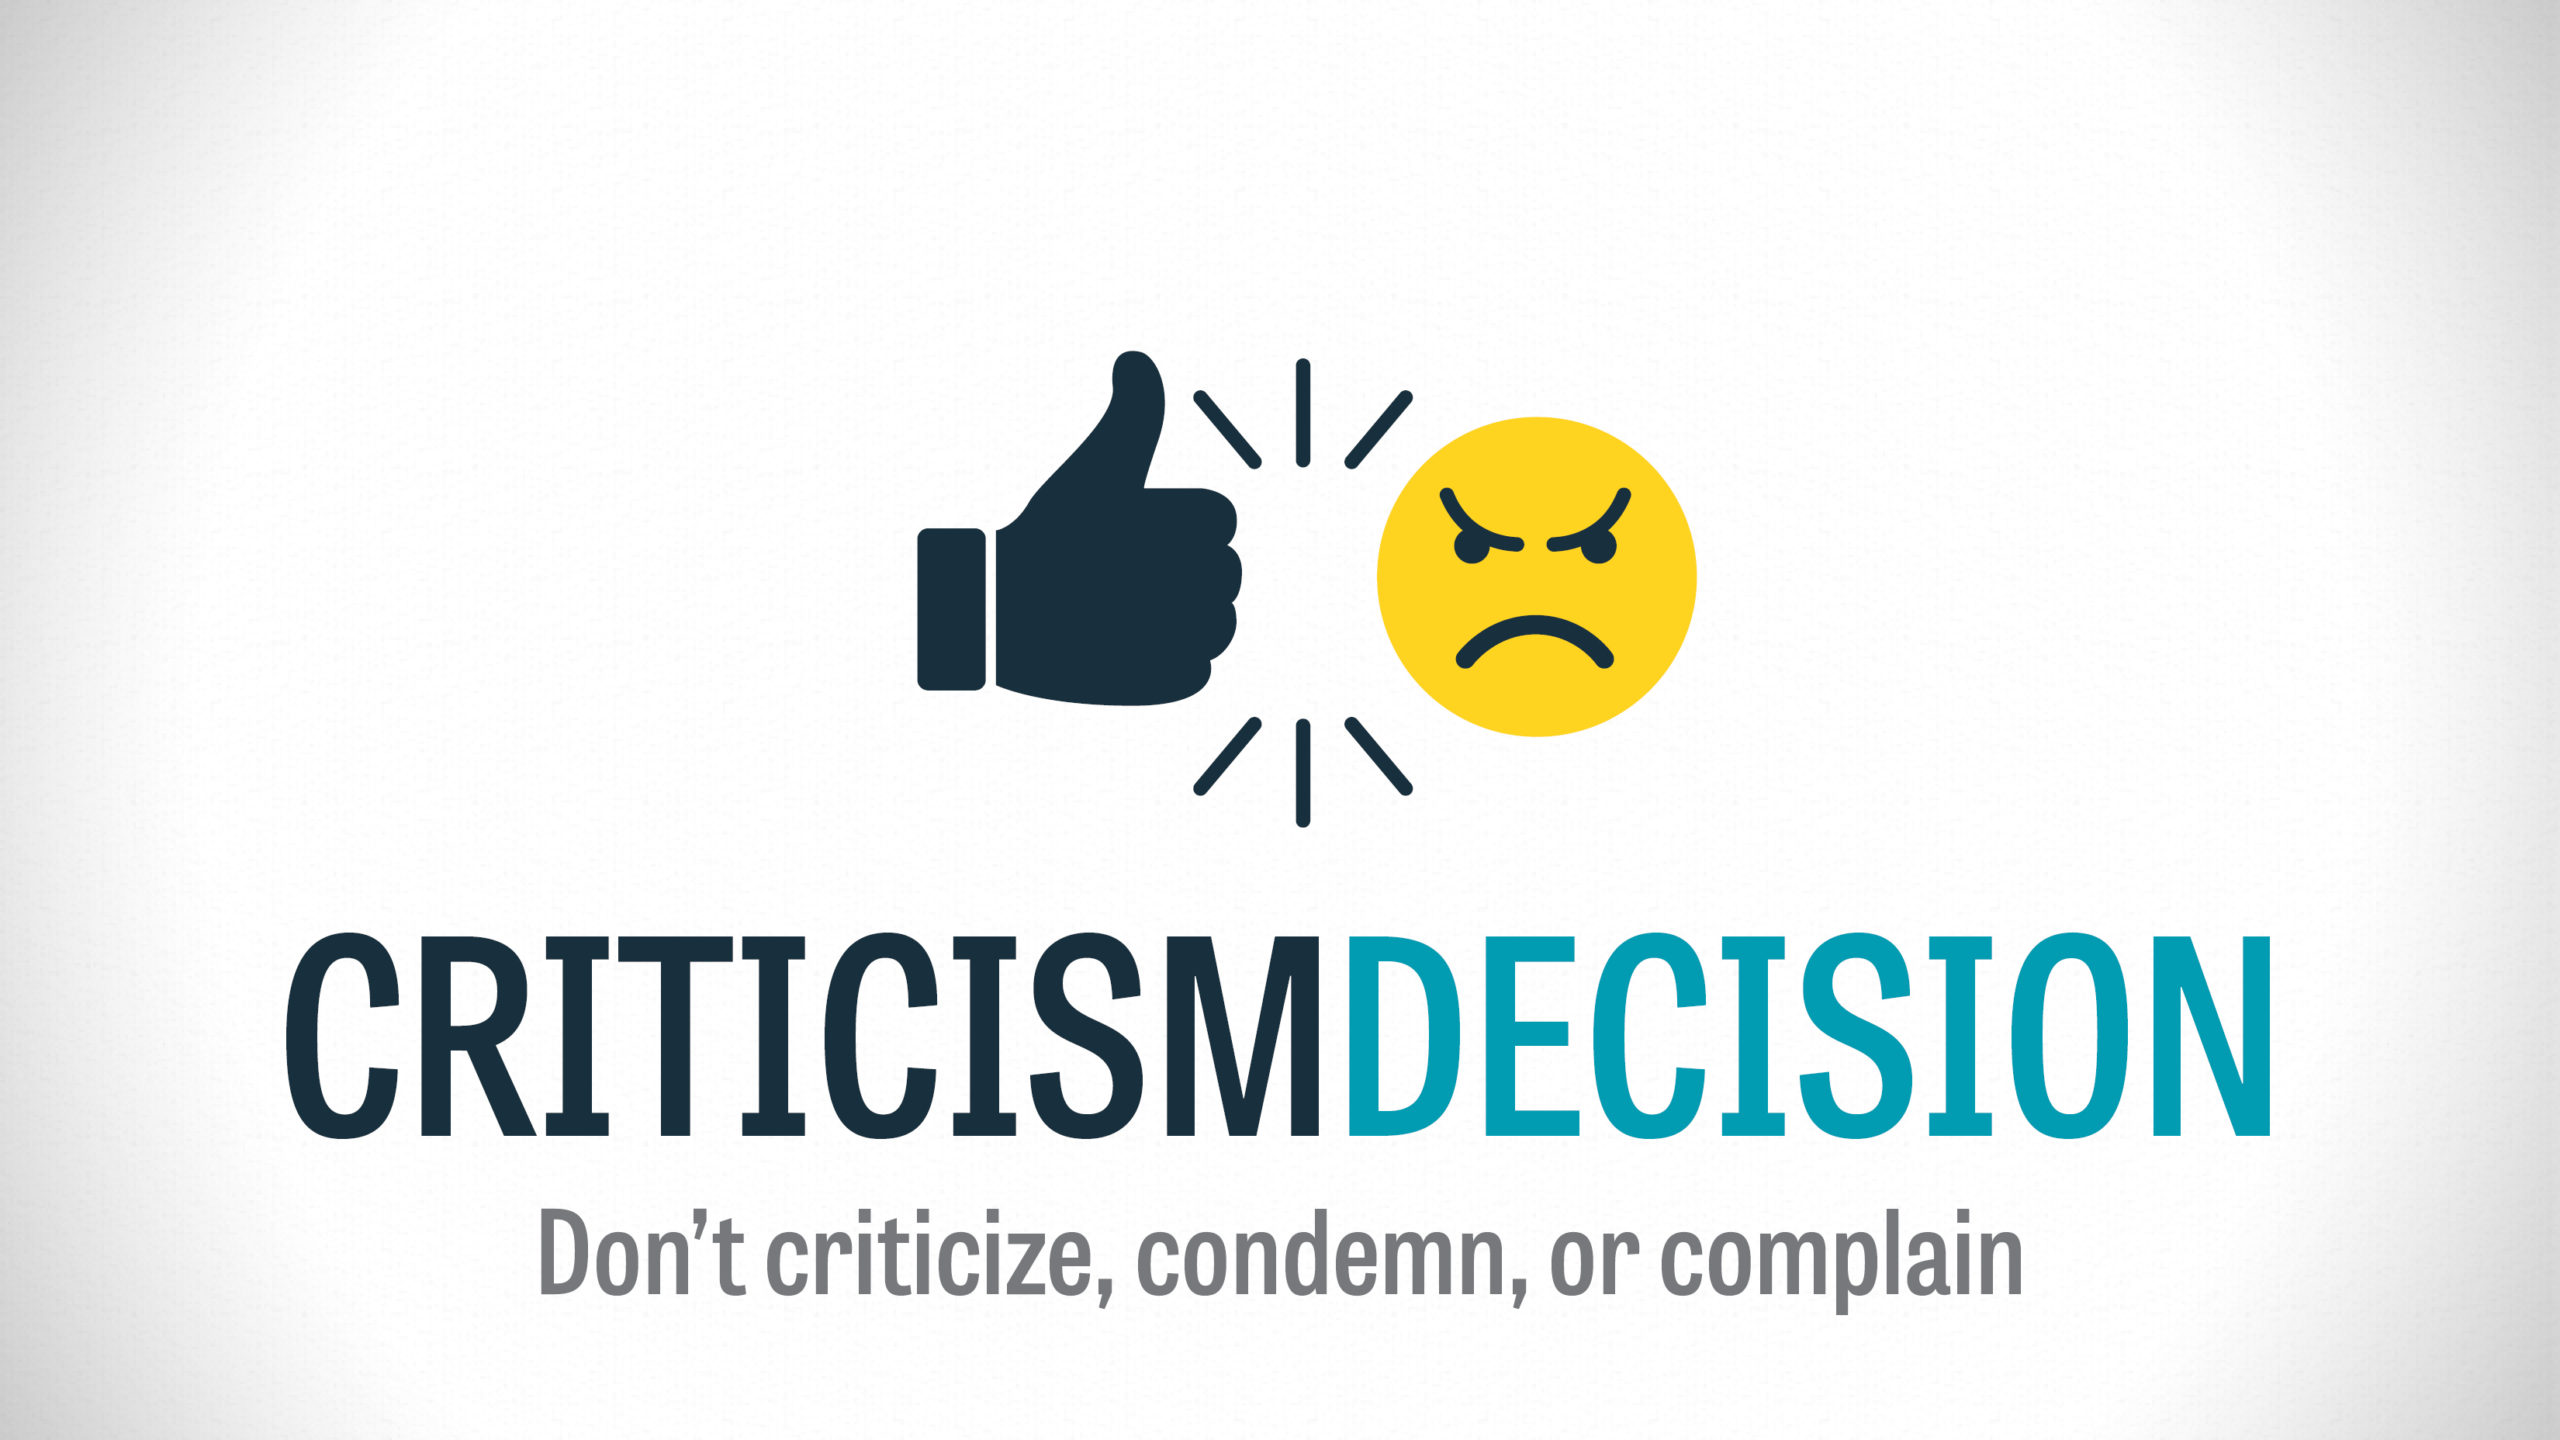 Criticism Decision – Part 5